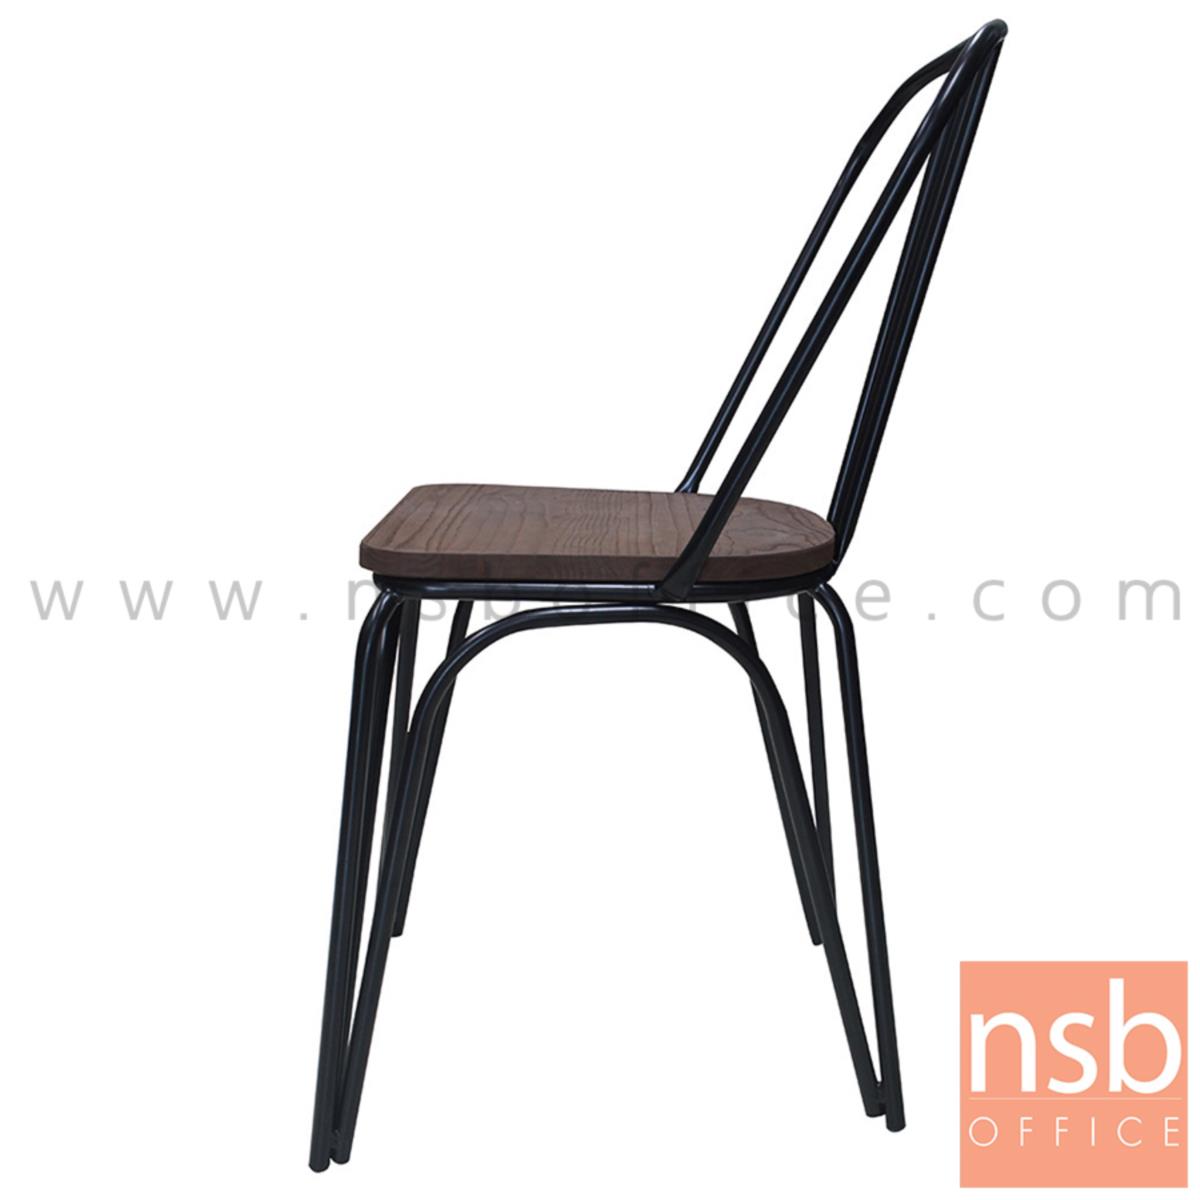 เก้าอี้โมเดิร์นไม้ รุ่น Elba (เอลบา) ขนาด 51W cm. โครงขาเหล็กพ่นสีดำ